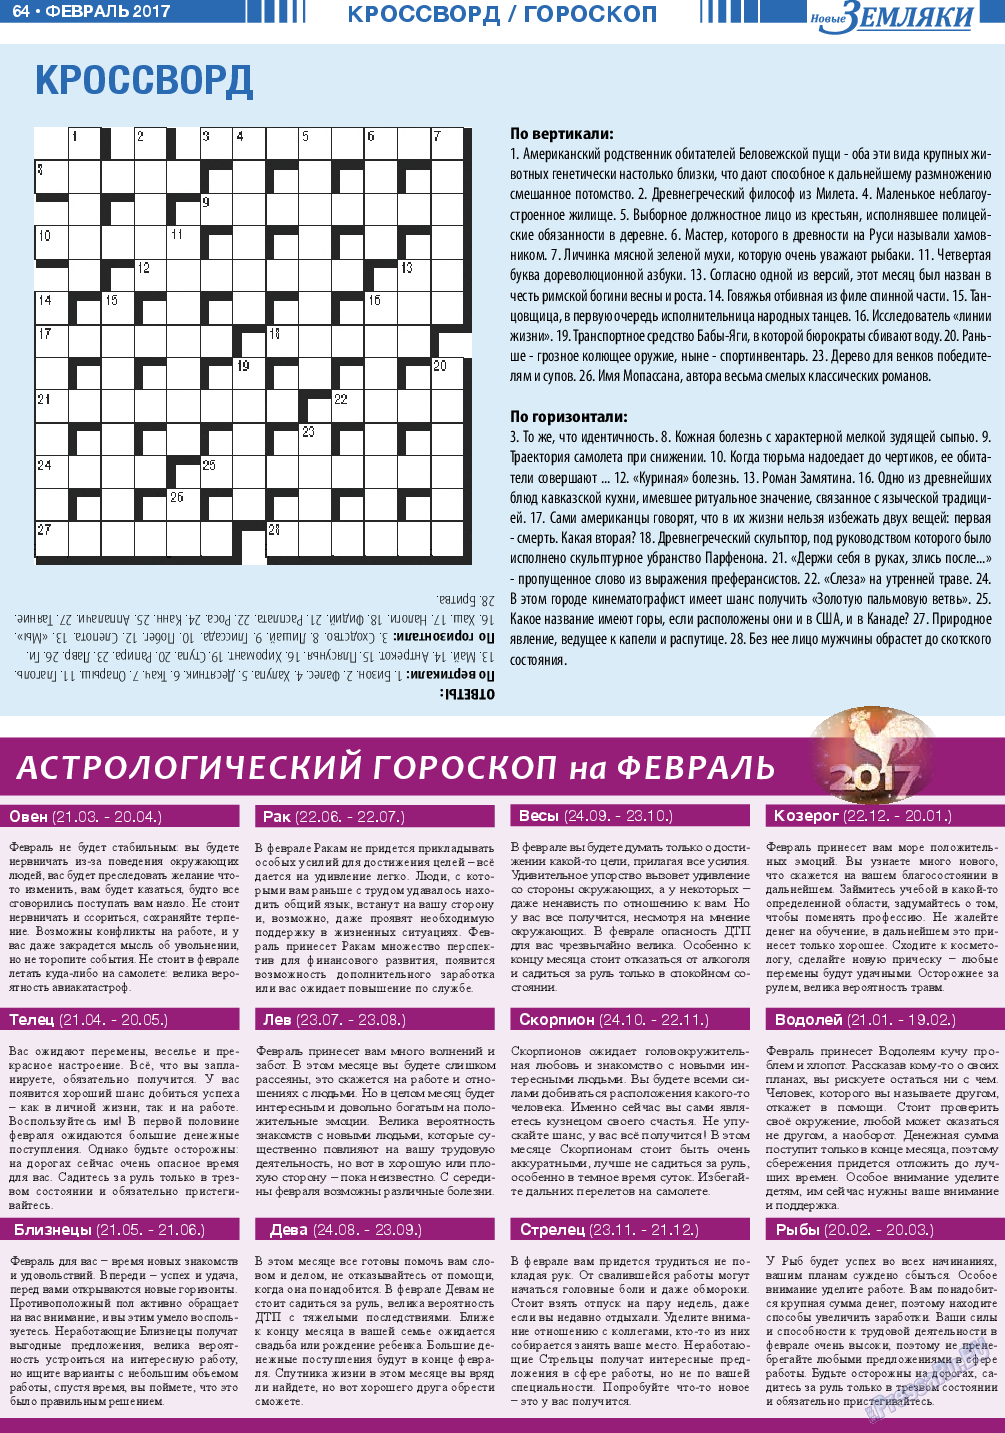 Новые Земляки, газета. 2017 №2 стр.64